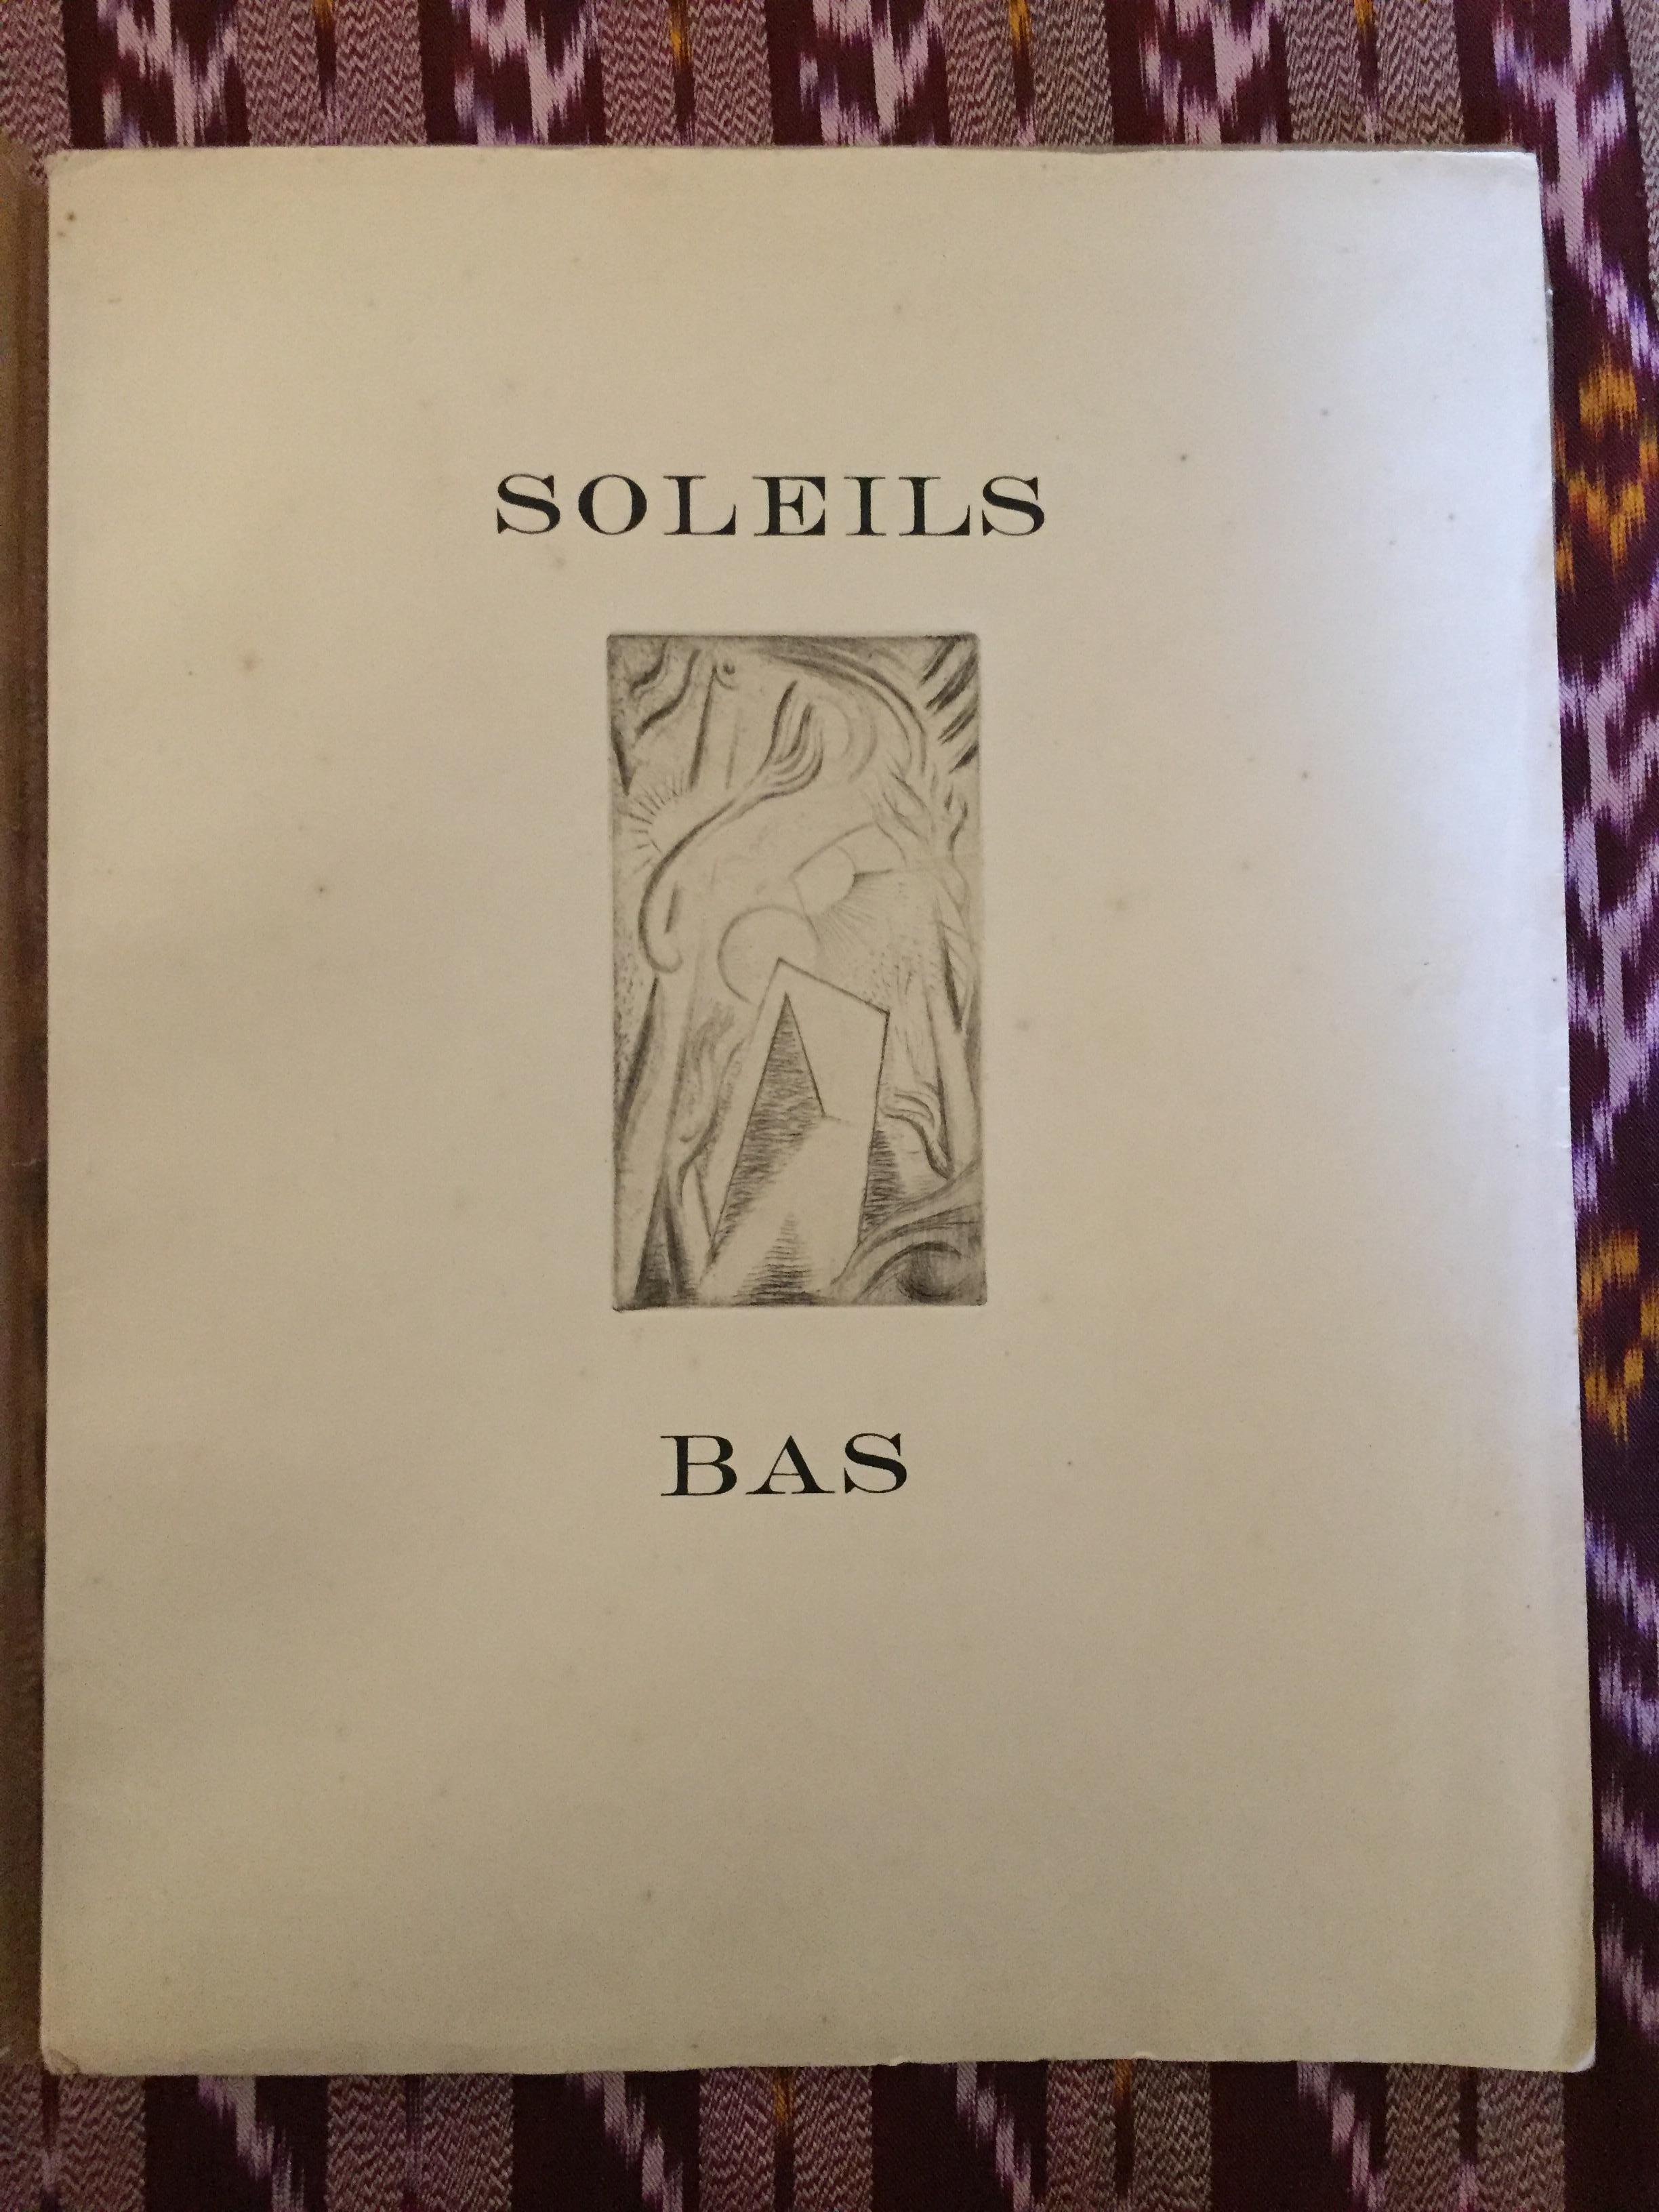 Rare livre illustré « Soleil bas » d'Andr Masson - 1924 - Art de André Masson, Georges Limbour